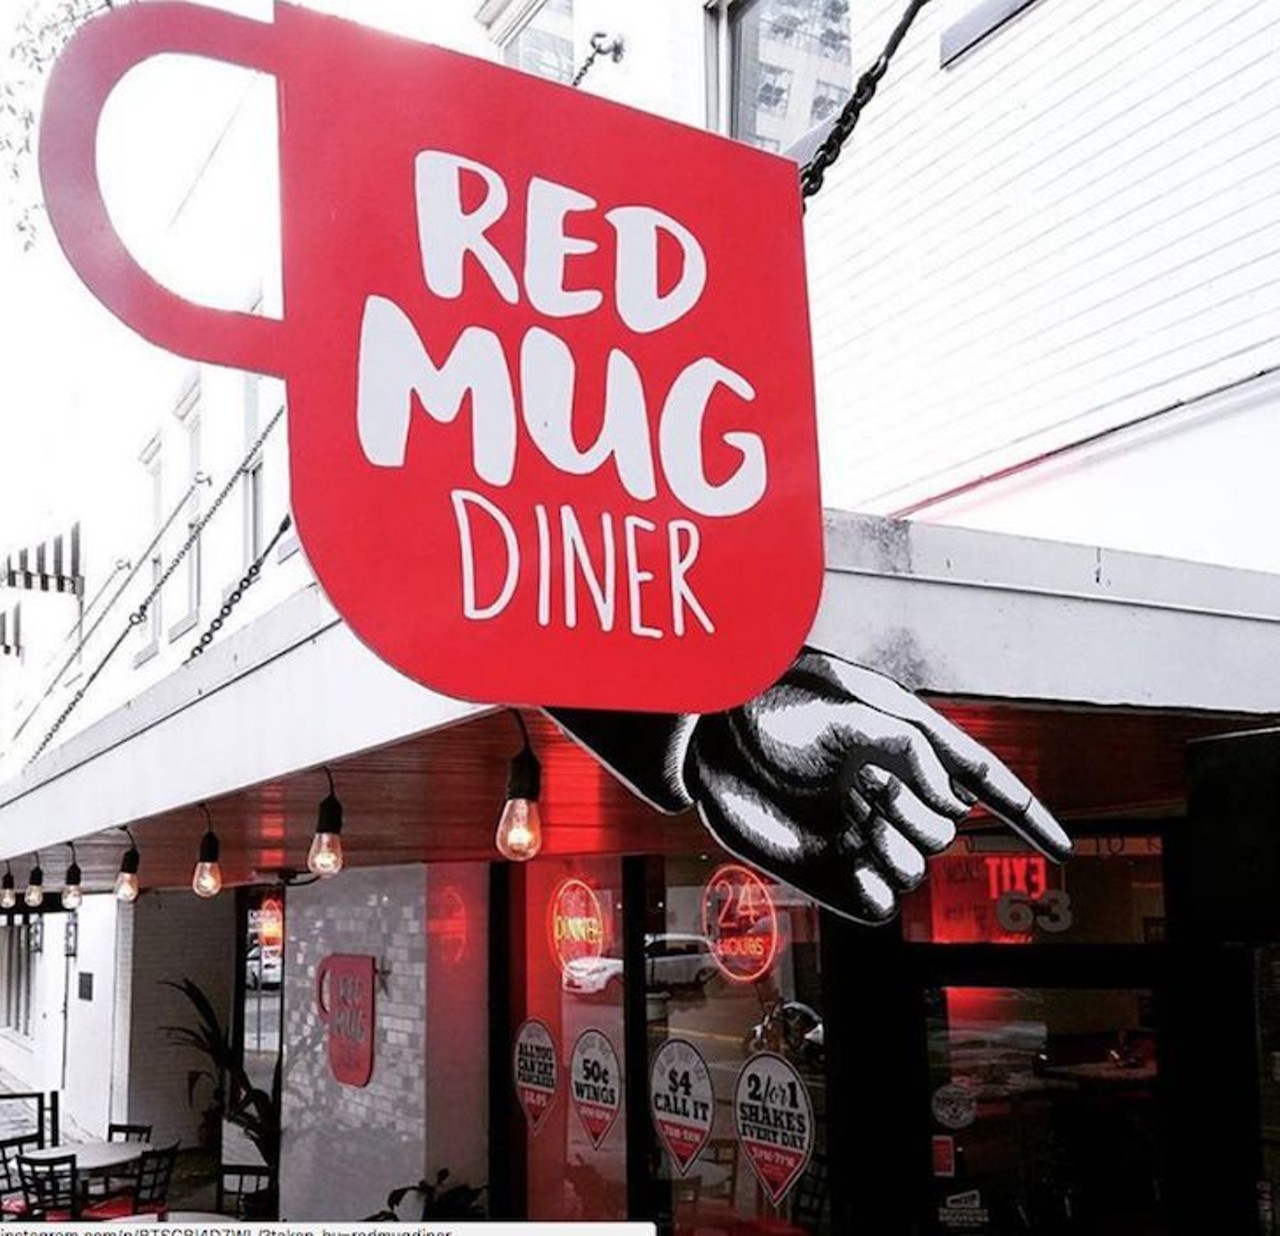 Red Mug Diner
63 E. Pine St.
Photo via redmugdiner/Instagram